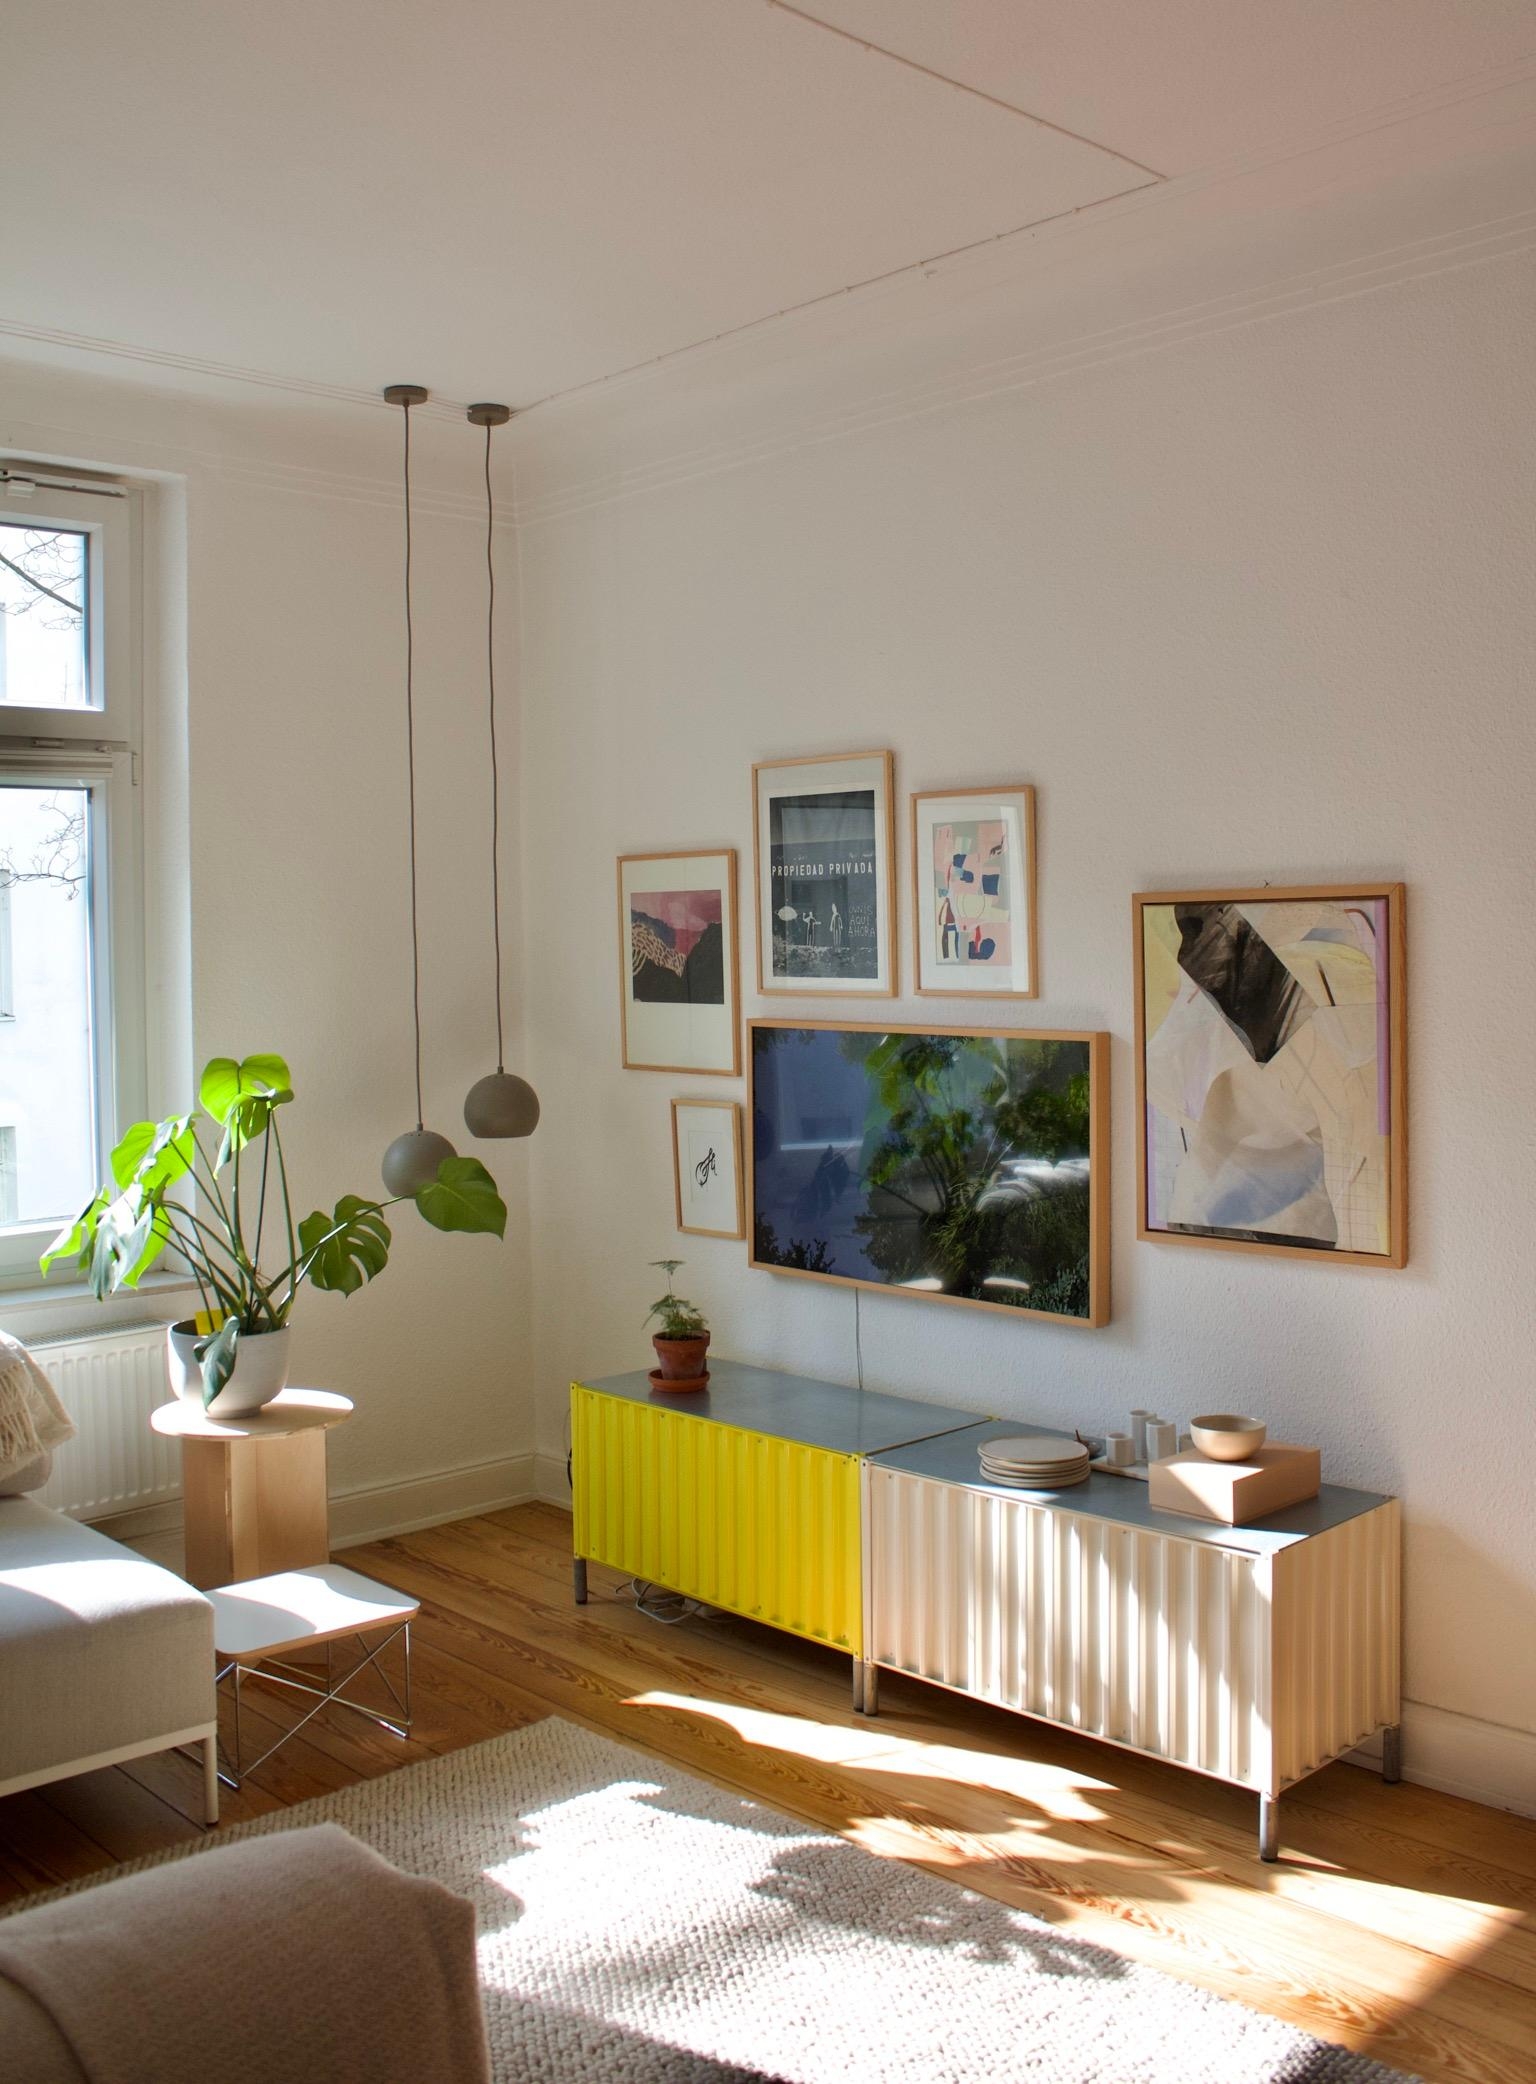 #wohnzimmer #sideboard #bilderwand #tv #monstera #beistelltisch #sonne #kunst